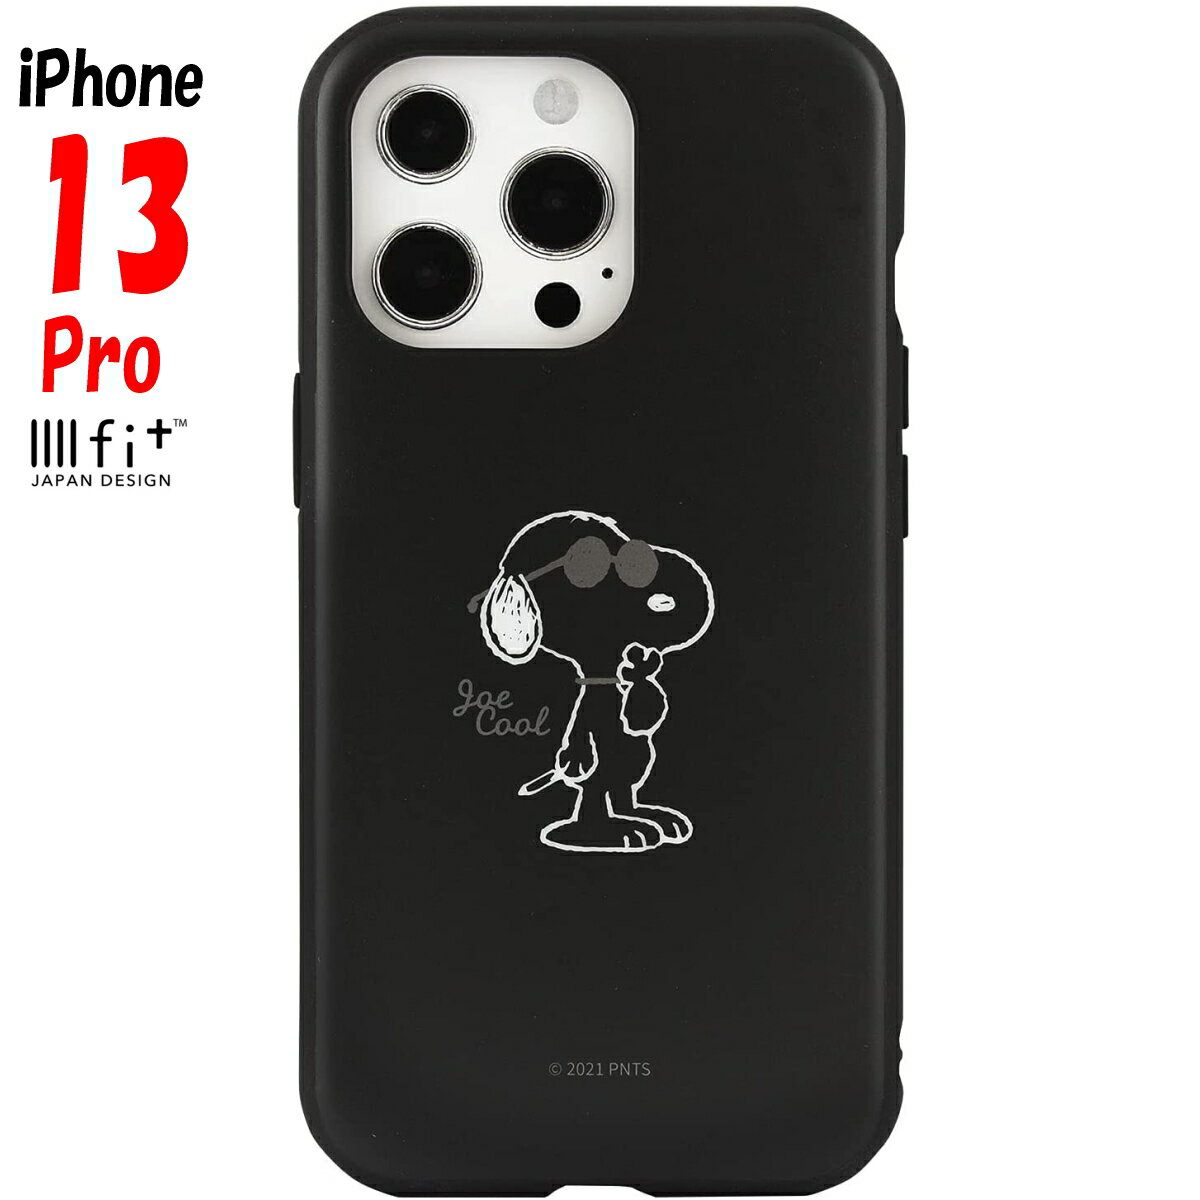 スヌーピー iPhone13 Pro ケース イーフィット IIIIfit ピーナッツ キャラクター グッズ ジョー・クール SNG-602B